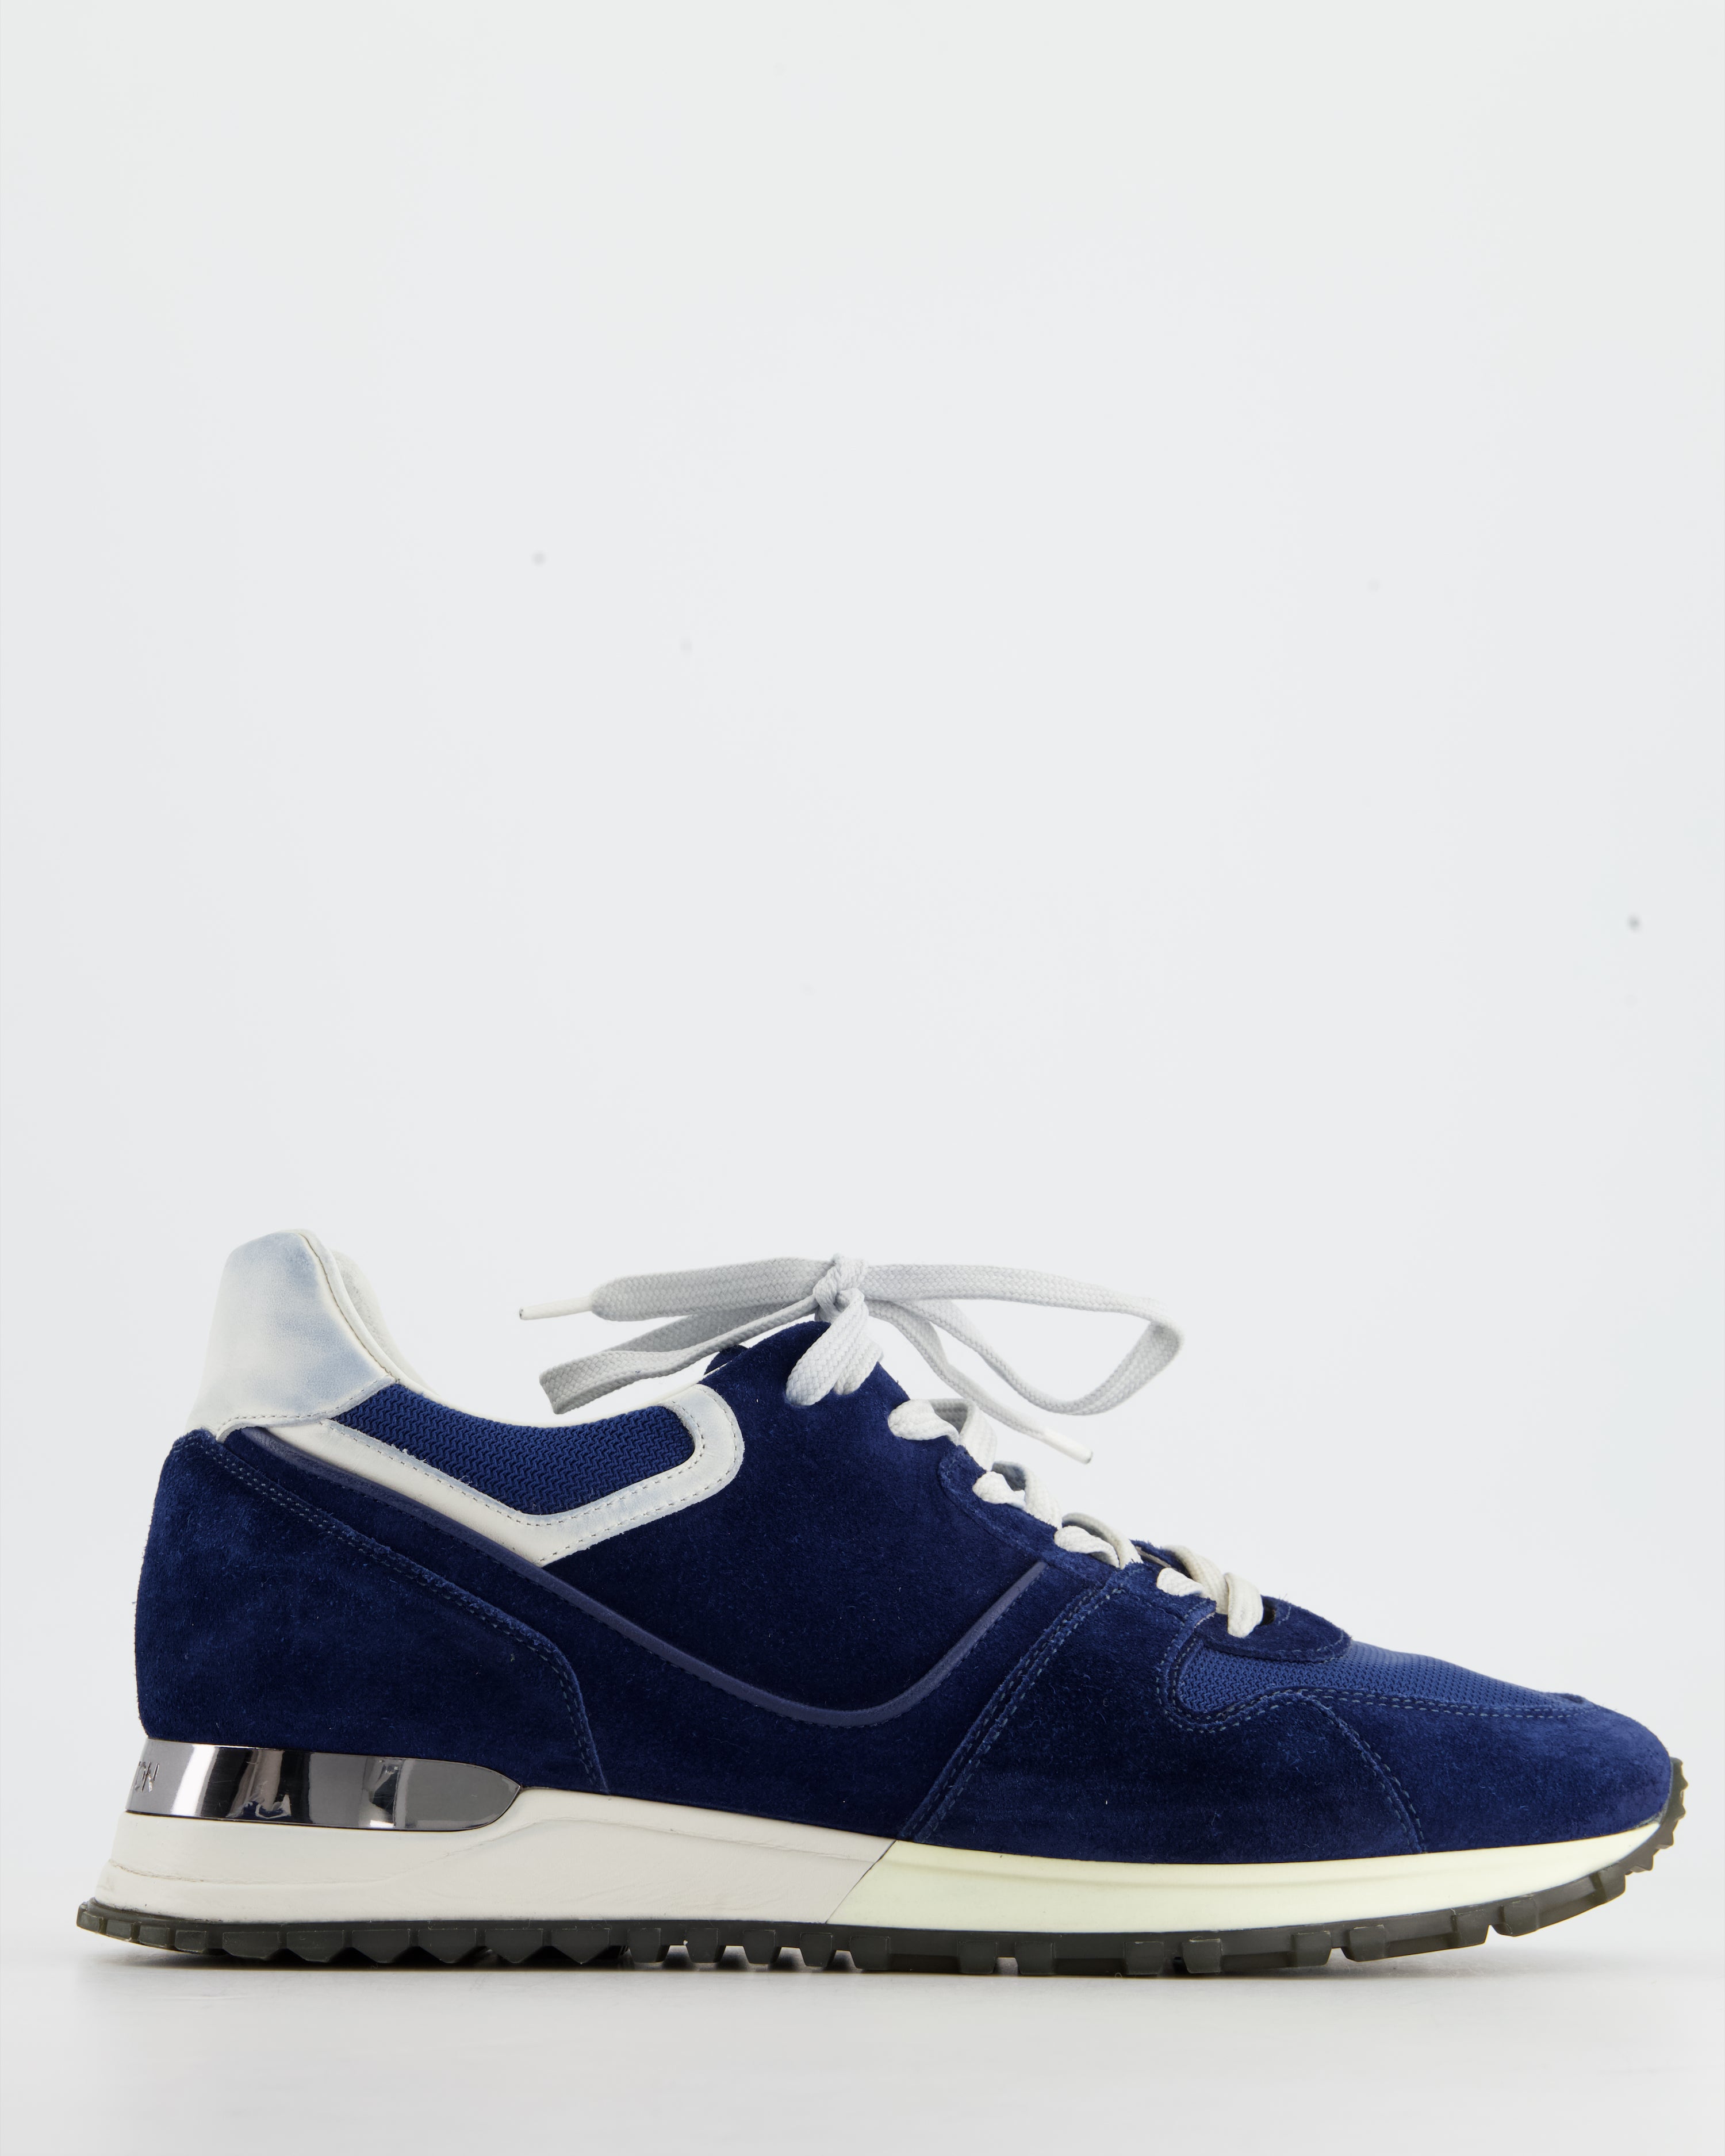 Louis Vuitton, Shoes, Louis Vuitton Run Away Sneakers Size 365